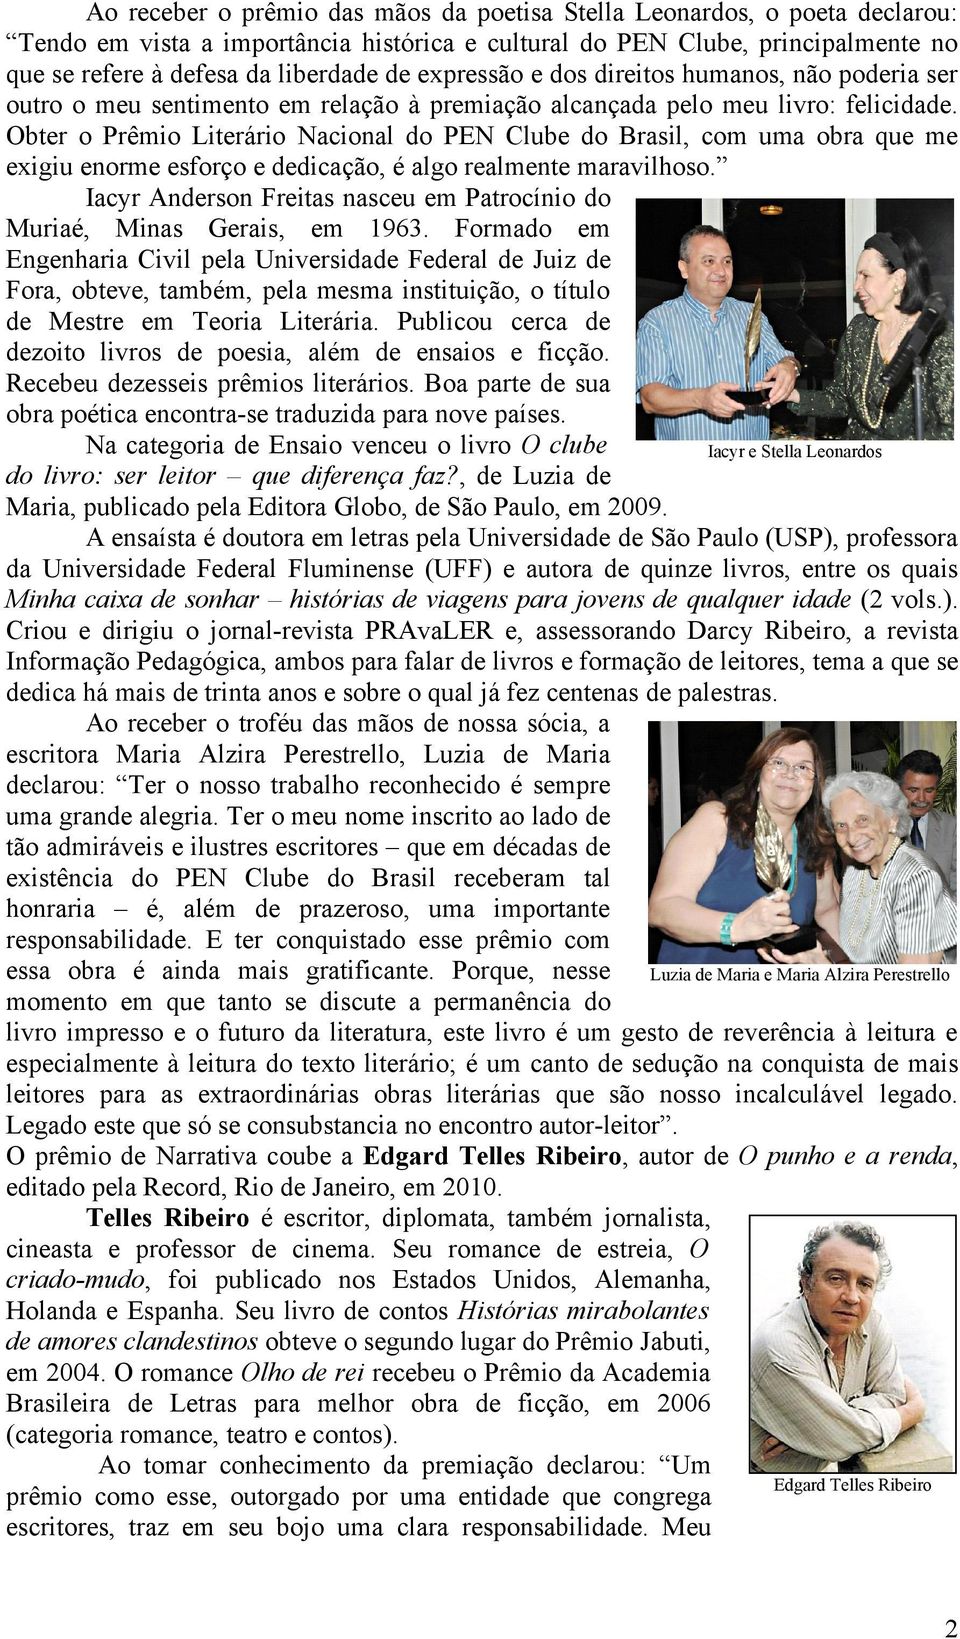 Obter o Prêmio Literário Nacional do PEN Clube do Brasil, com uma obra que me exigiu enorme esforço e dedicação, é algo realmente maravilhoso.